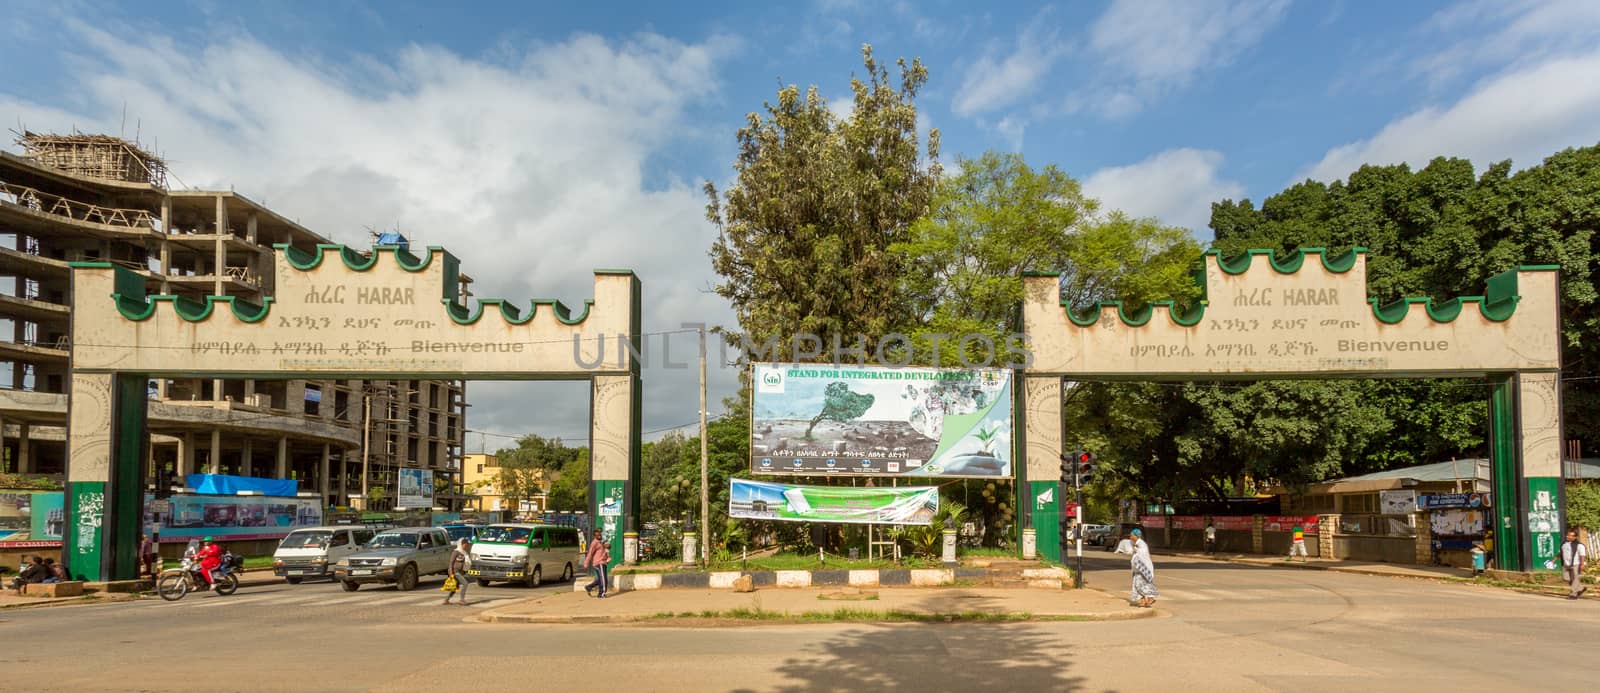 Harar Gate by derejeb